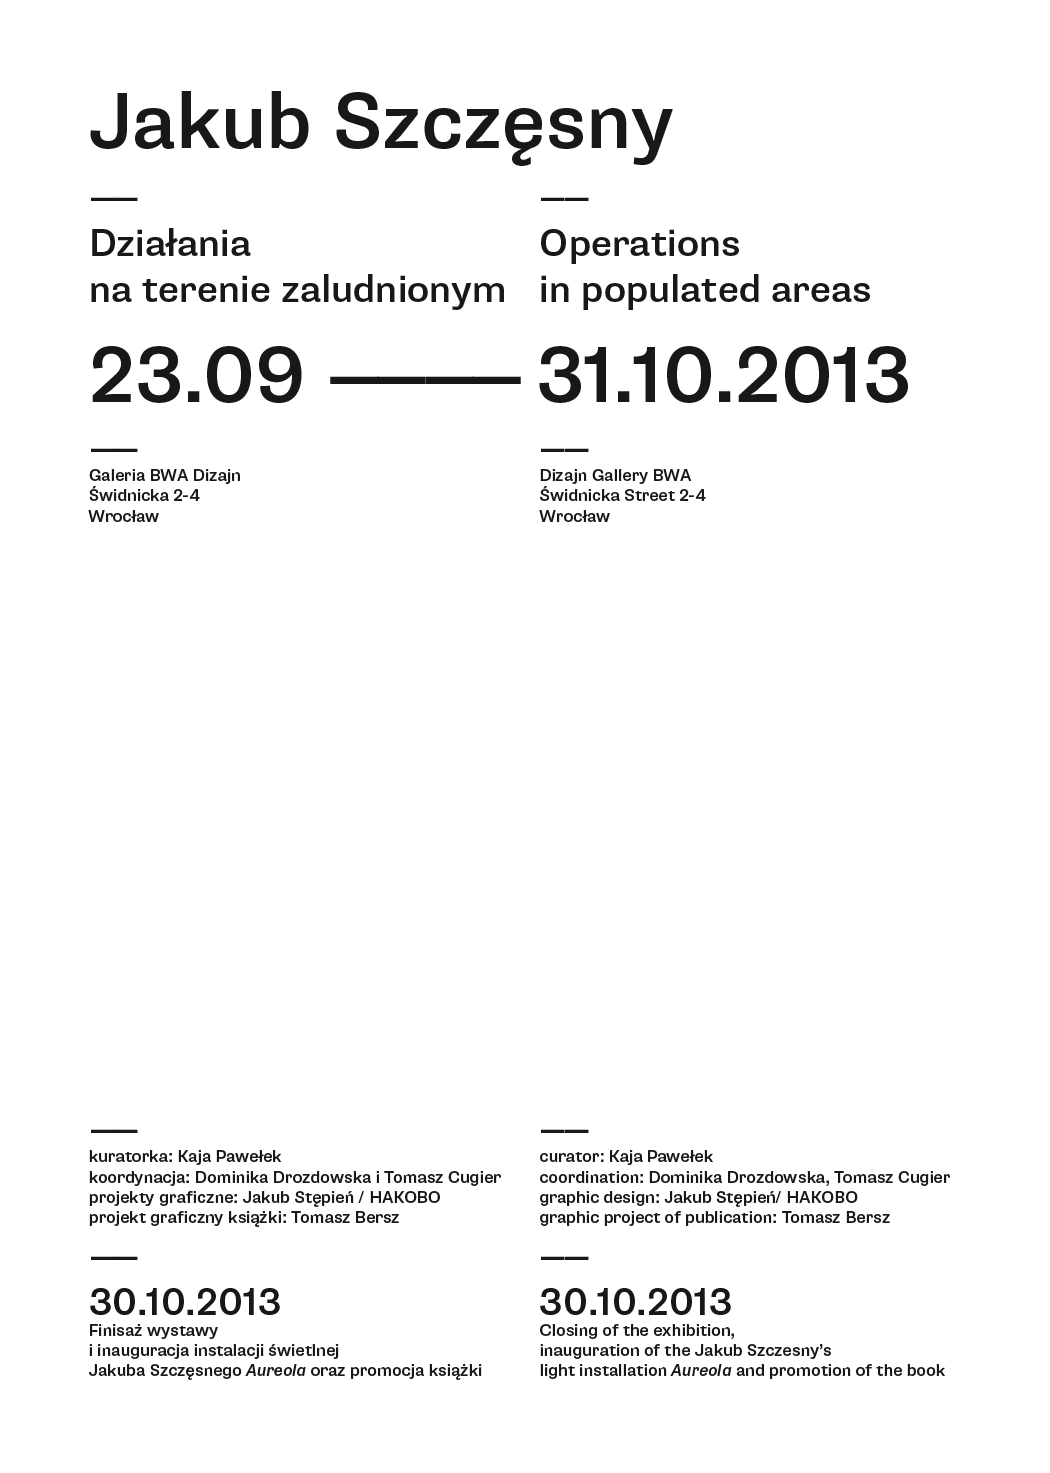 architecture-invitation-plakat-jakub-szczesny-jakub-stepien-hakobo